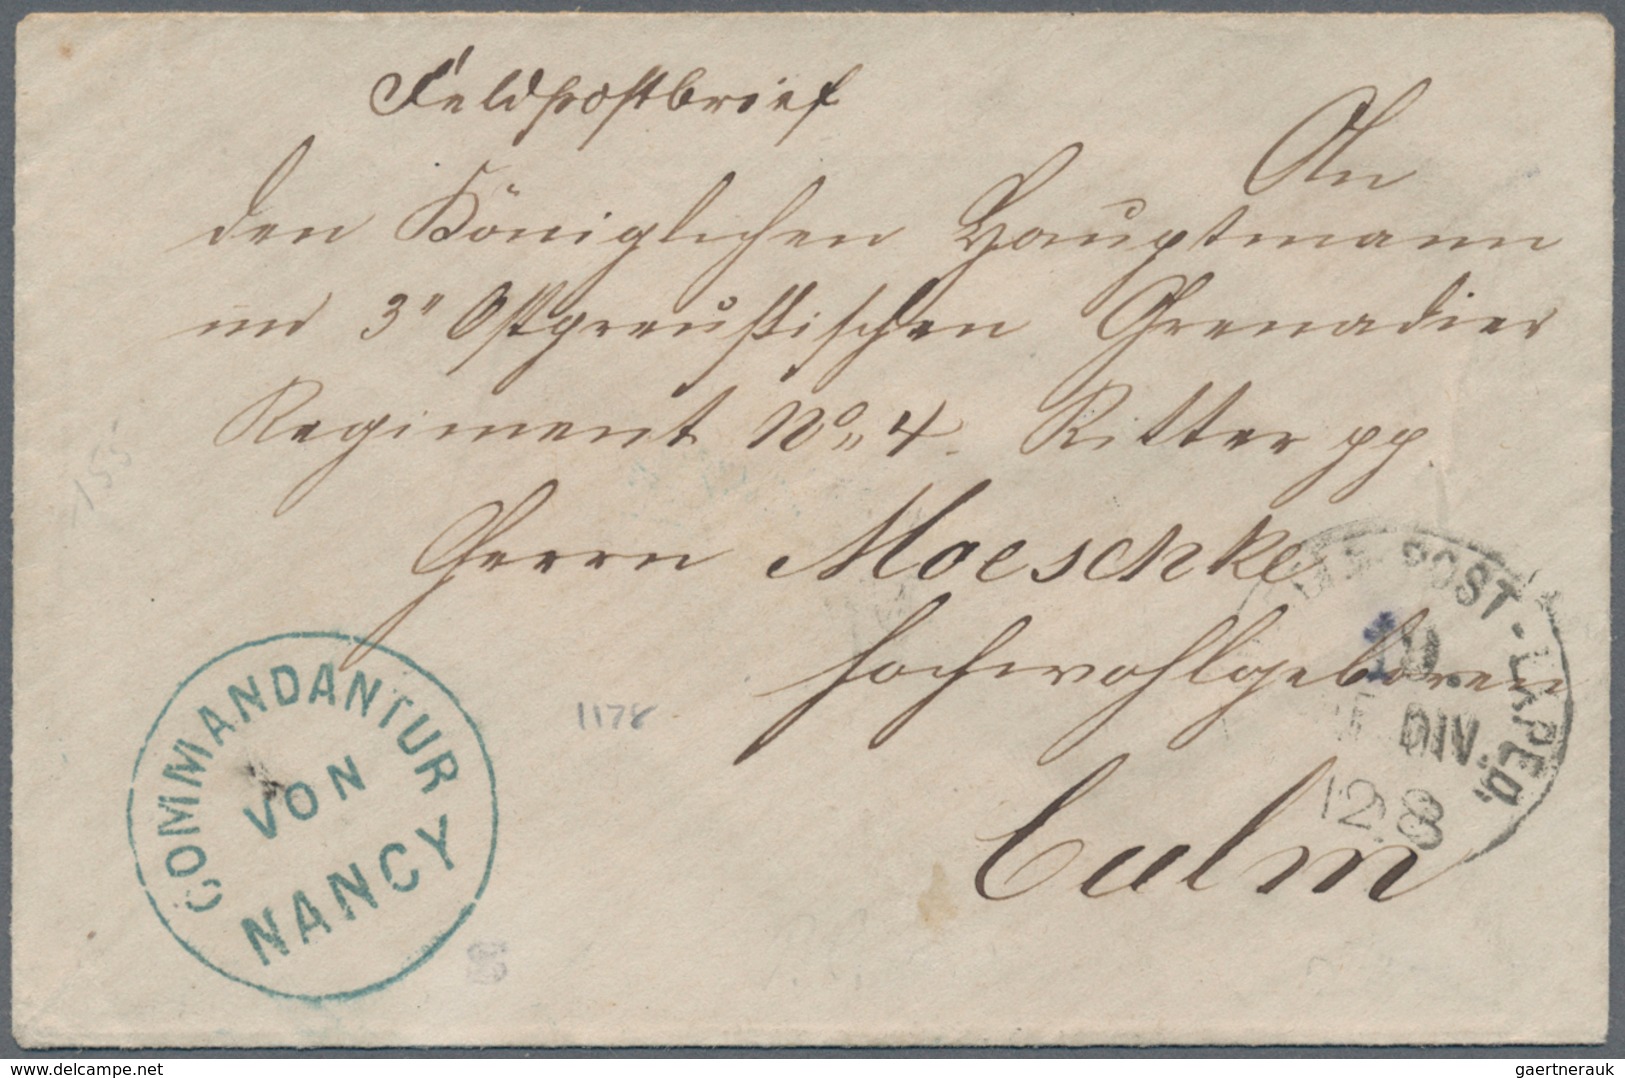 31398 Elsass-Lothringen - Marken und Briefe: 1870/1875, DEUTSCH-FRANZÖSISCHER KRIEG, vielseitige Zusammens